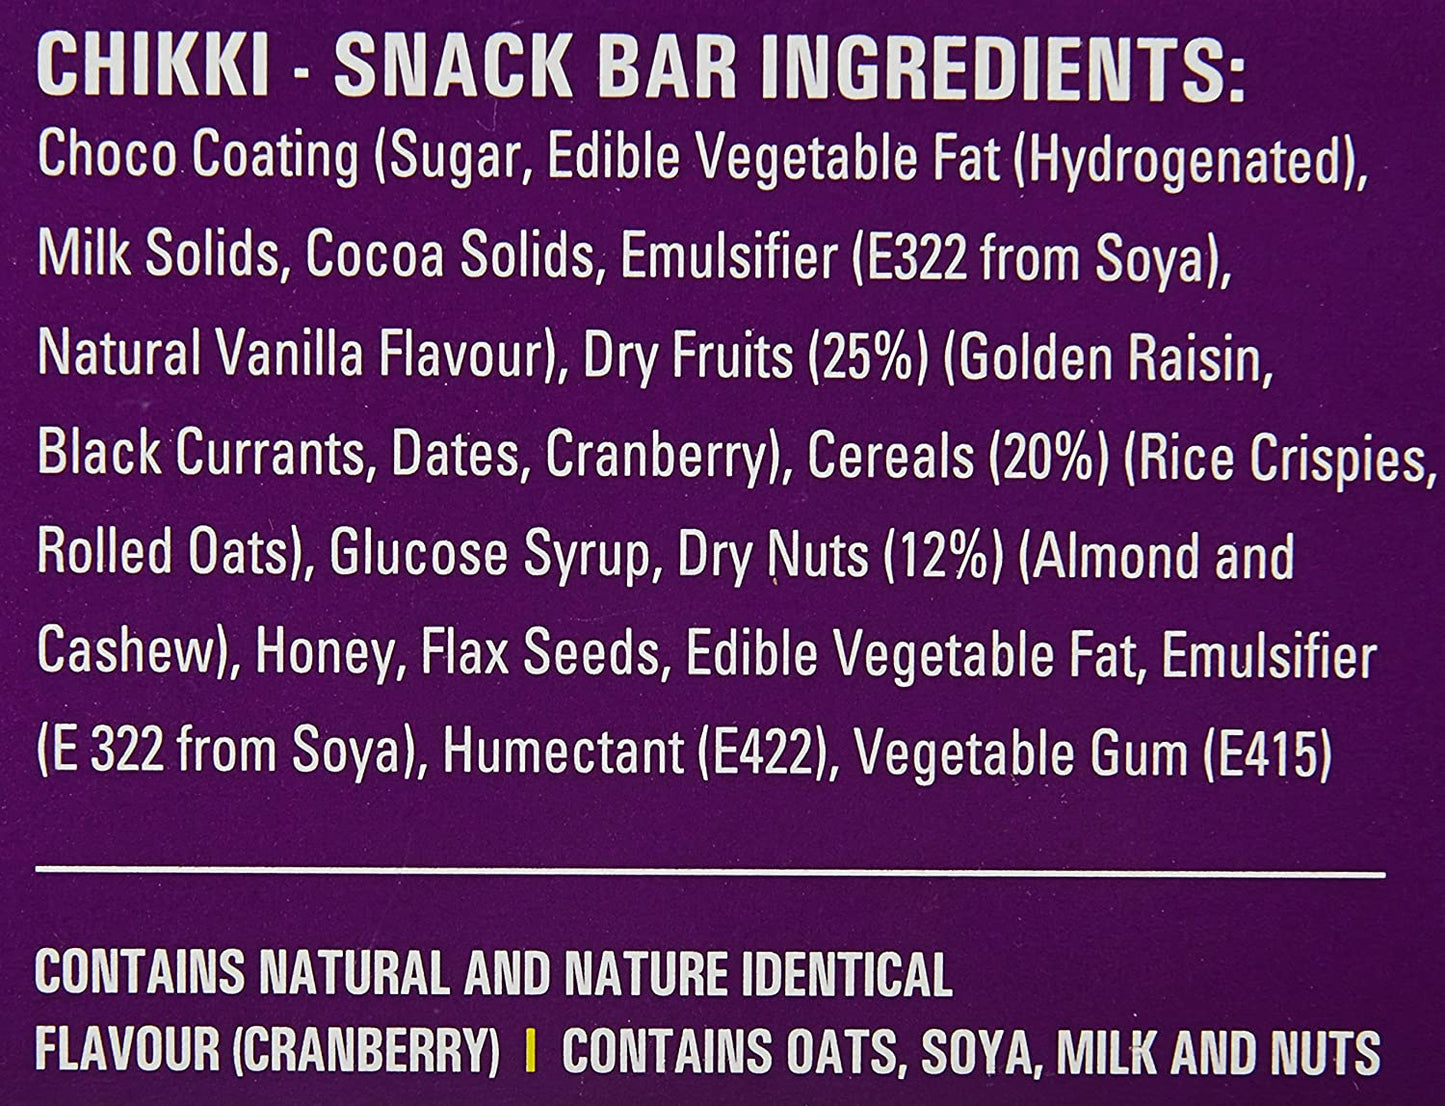 Snack Bar Fruit & Nut Choco 360g